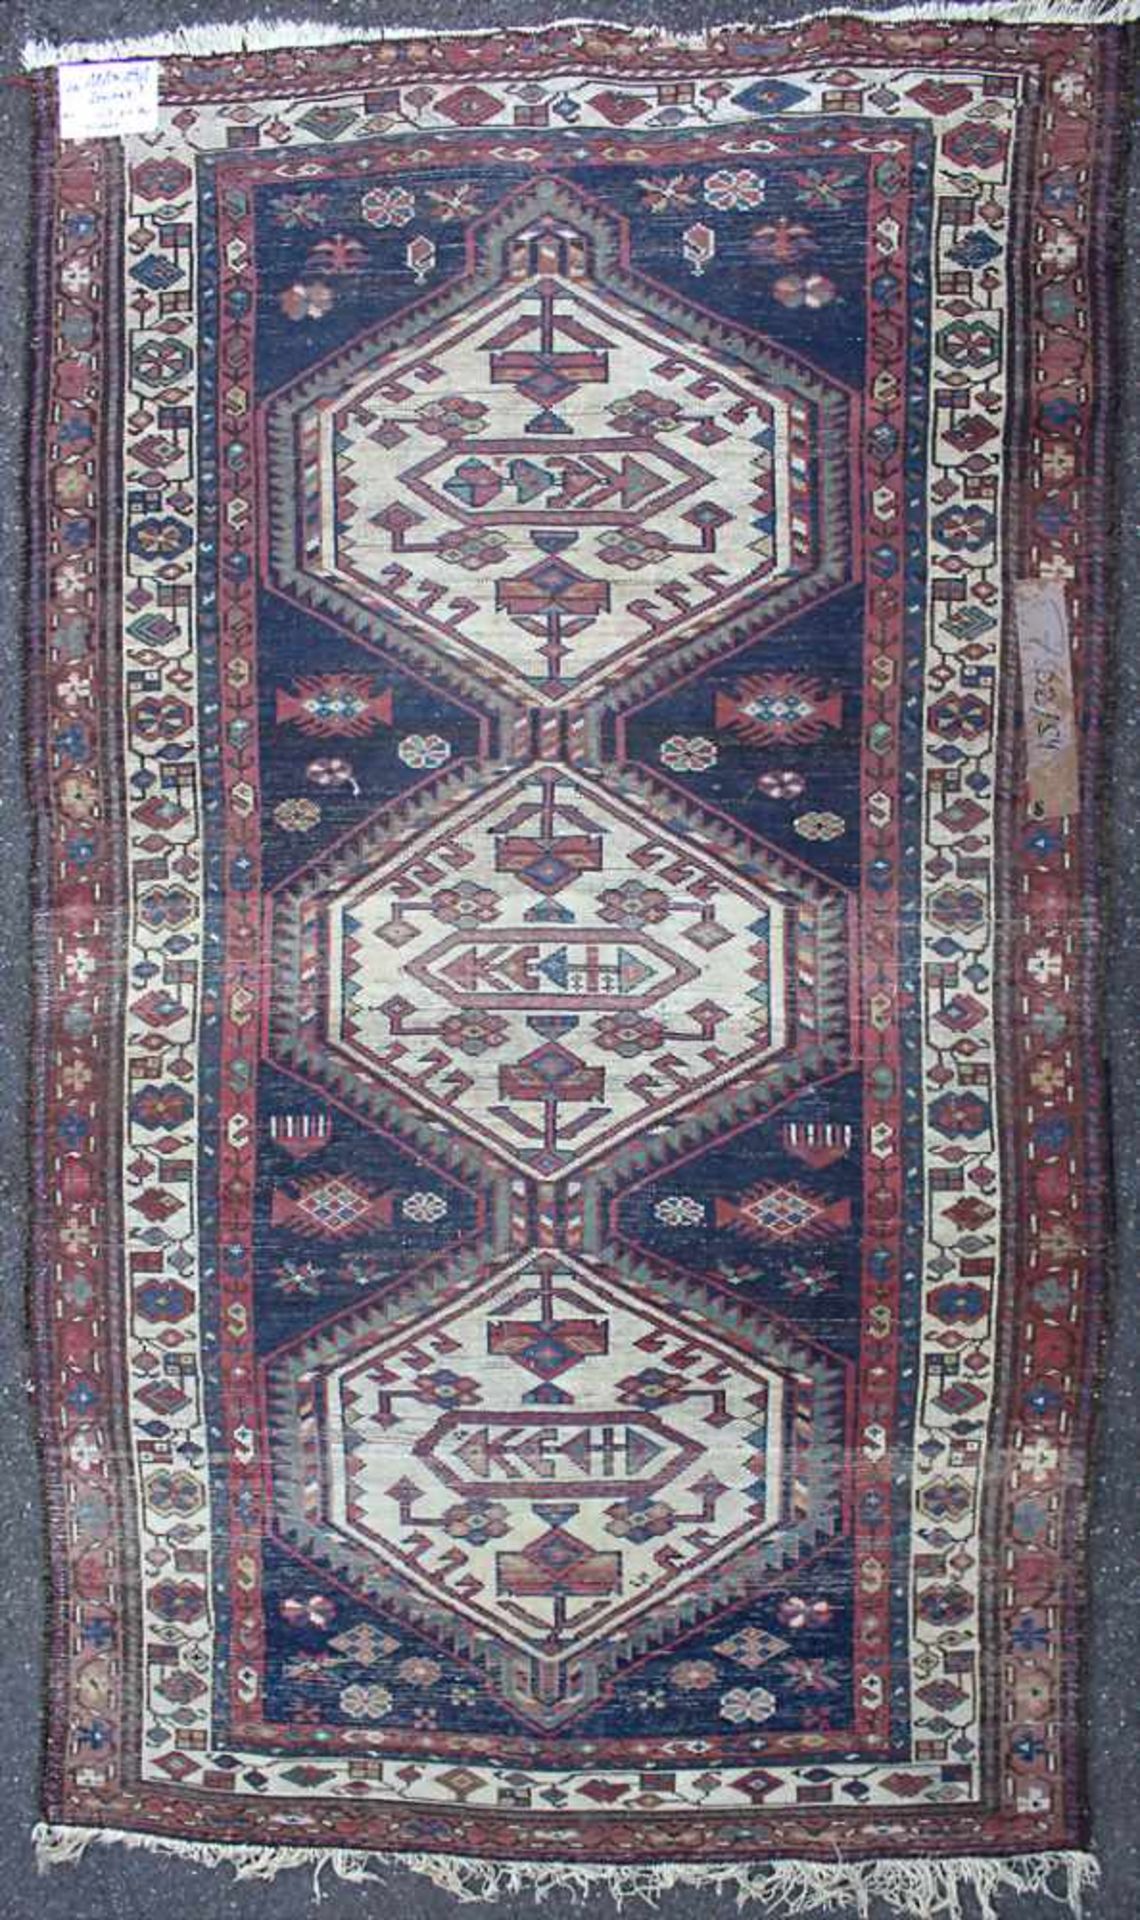 Orientteppich 'Hamadan' / An oriental carpet 'Hamadan'Material: Wolle auf Baumwolle, Maße: 112,5 x - Bild 4 aus 4